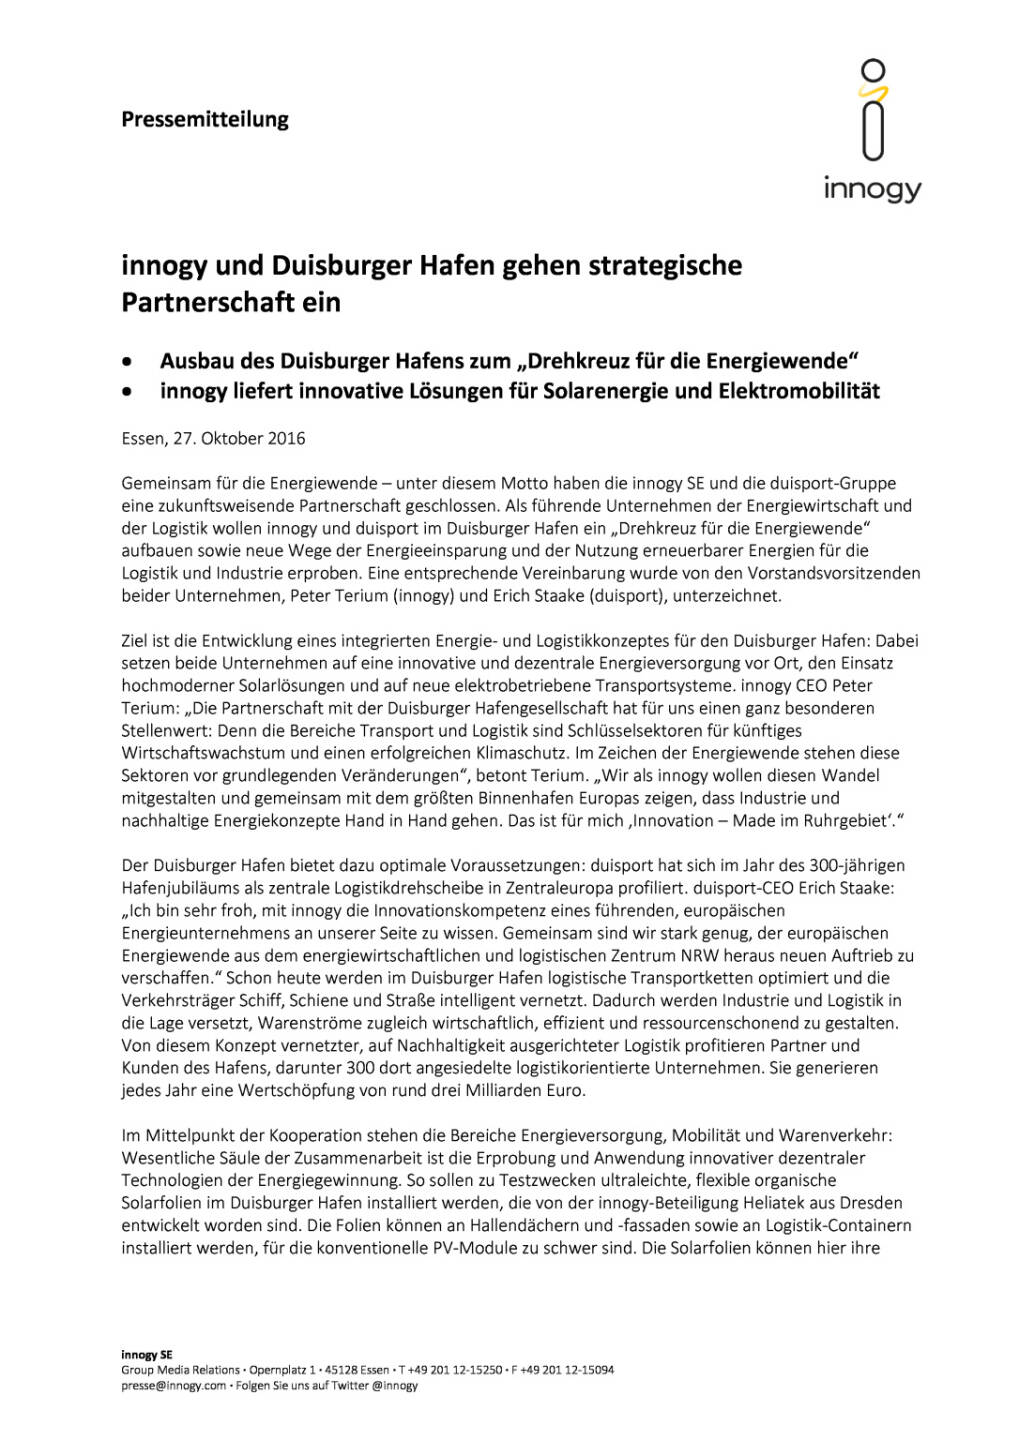 innogy und Duisburger Hafen: strategische Partnerschaft, Seite 1/2, komplettes Dokument unter http://boerse-social.com/static/uploads/file_1945_innogy_und_duisburger_hafen_strategische_partnerschaft.pdf